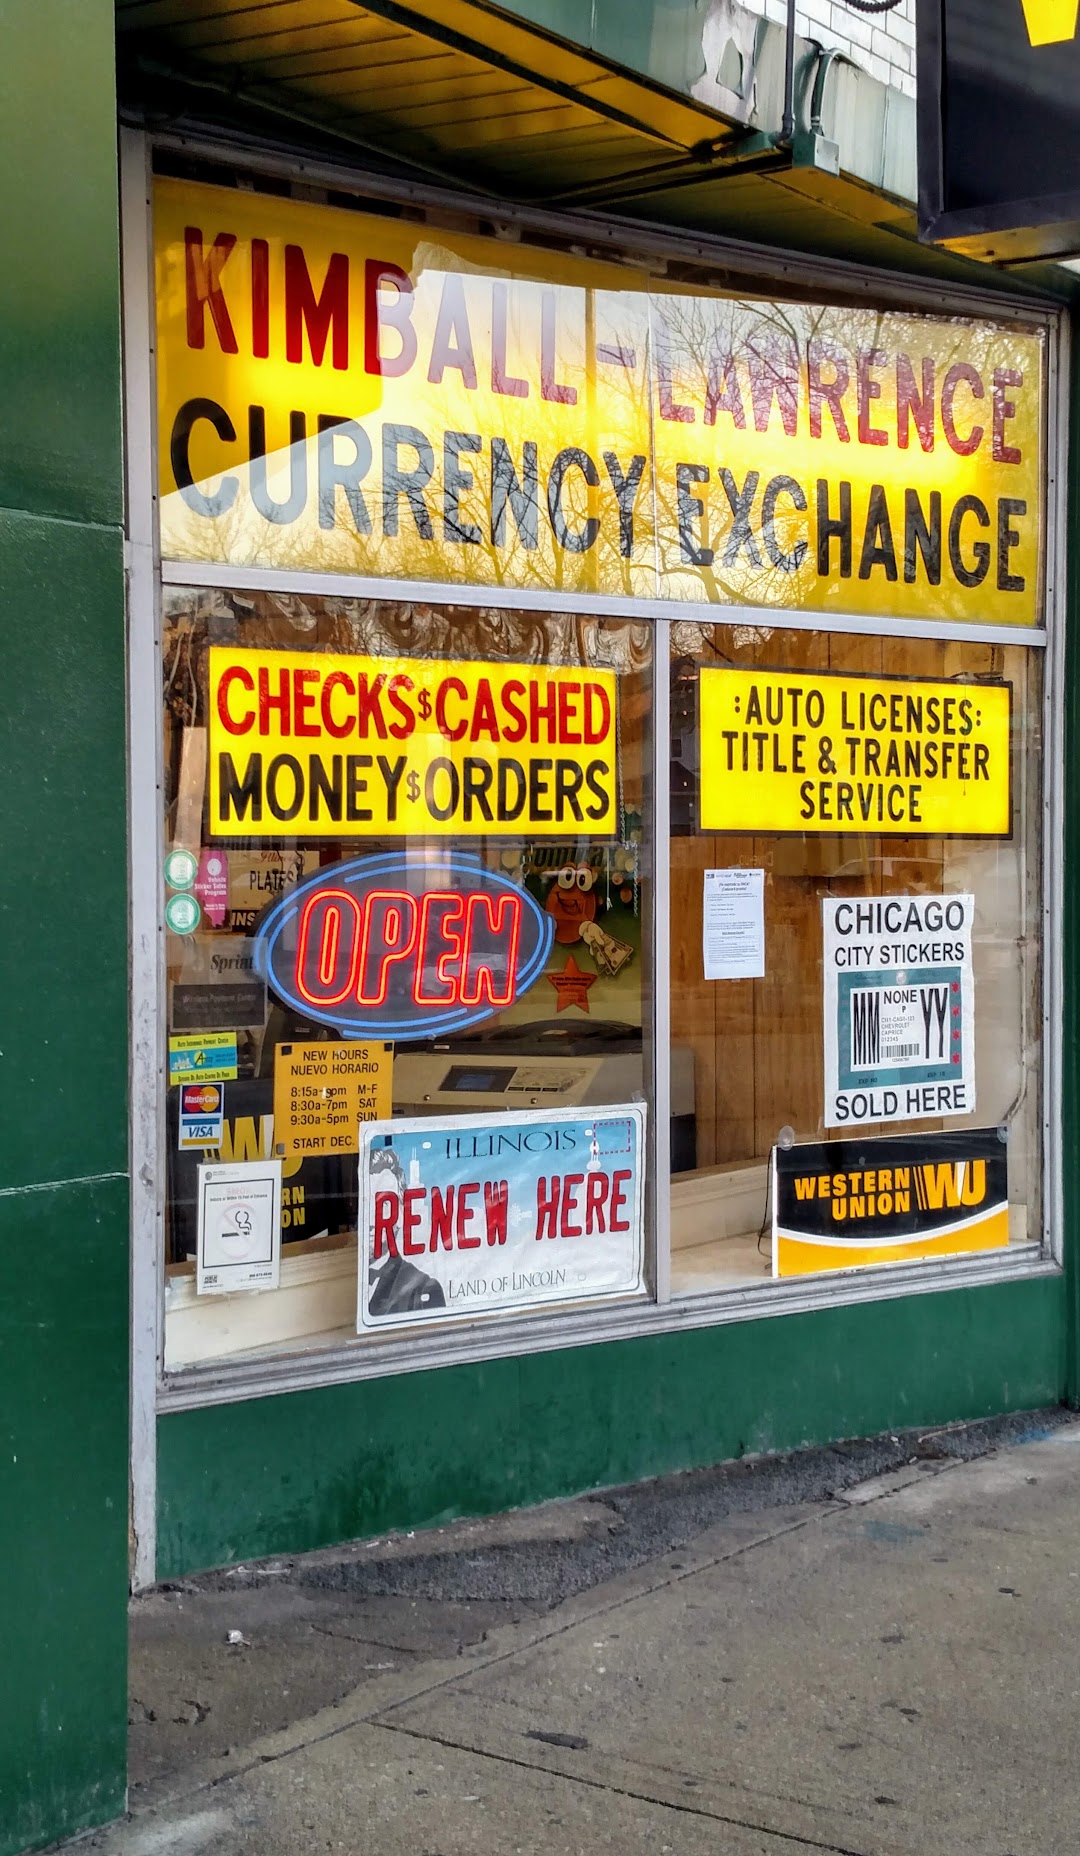 Kimball Lawrence Currency Exchange